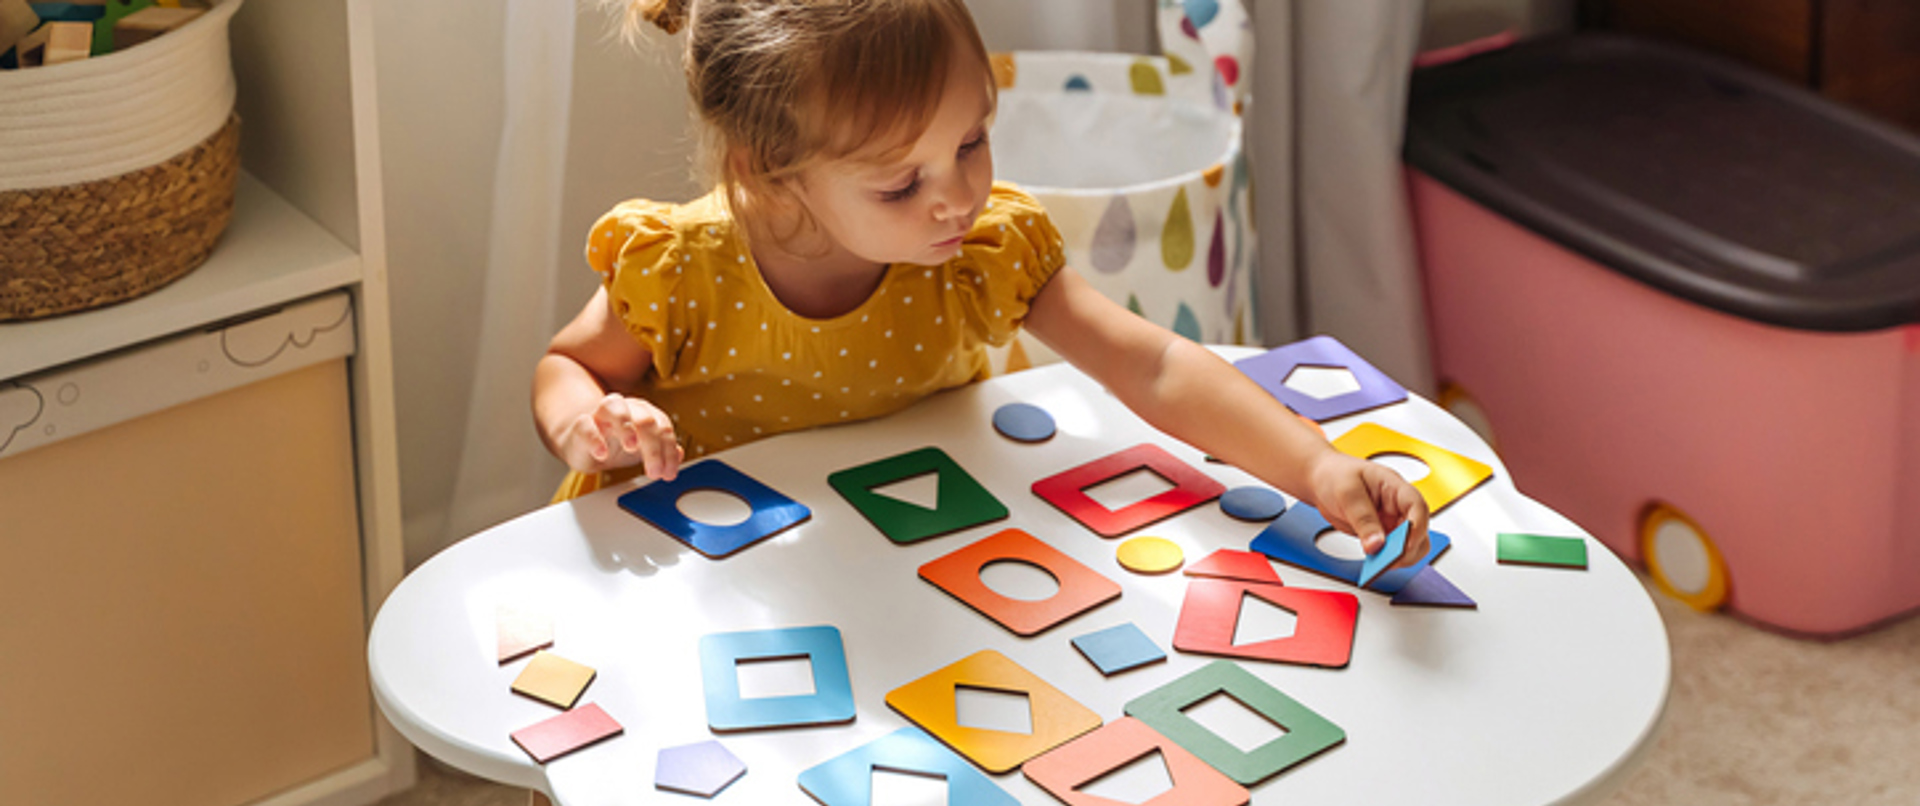 Ebeveynlik: Montessori Eğitim Yöntemi Hakkında Bilmen Gerekenler